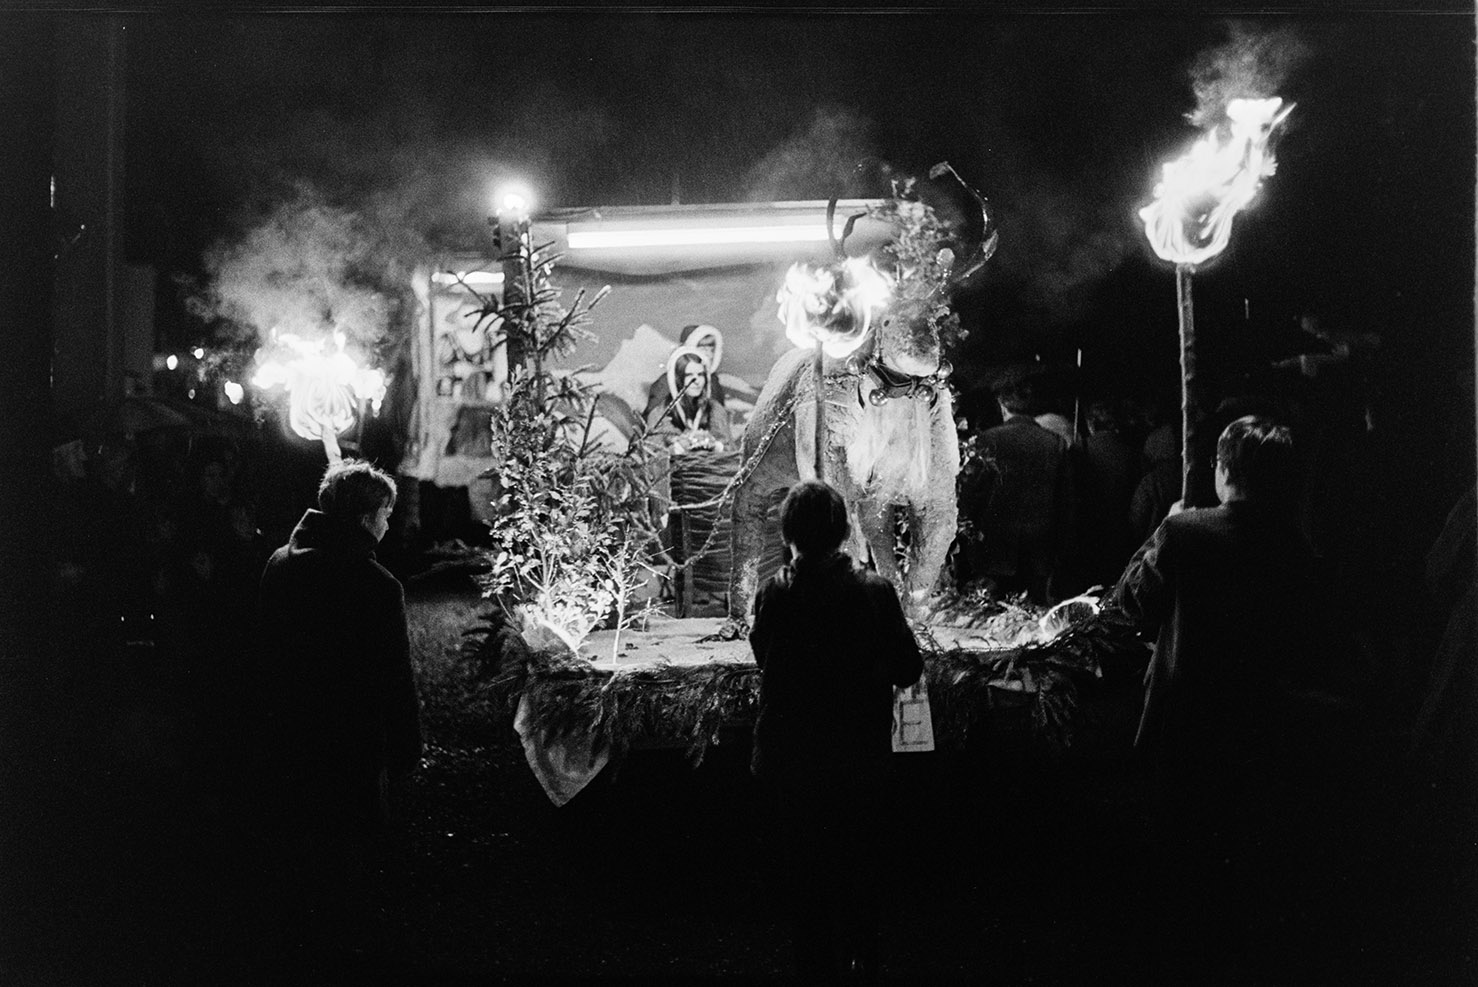 Carnival floats at night, Dolton, November 1972